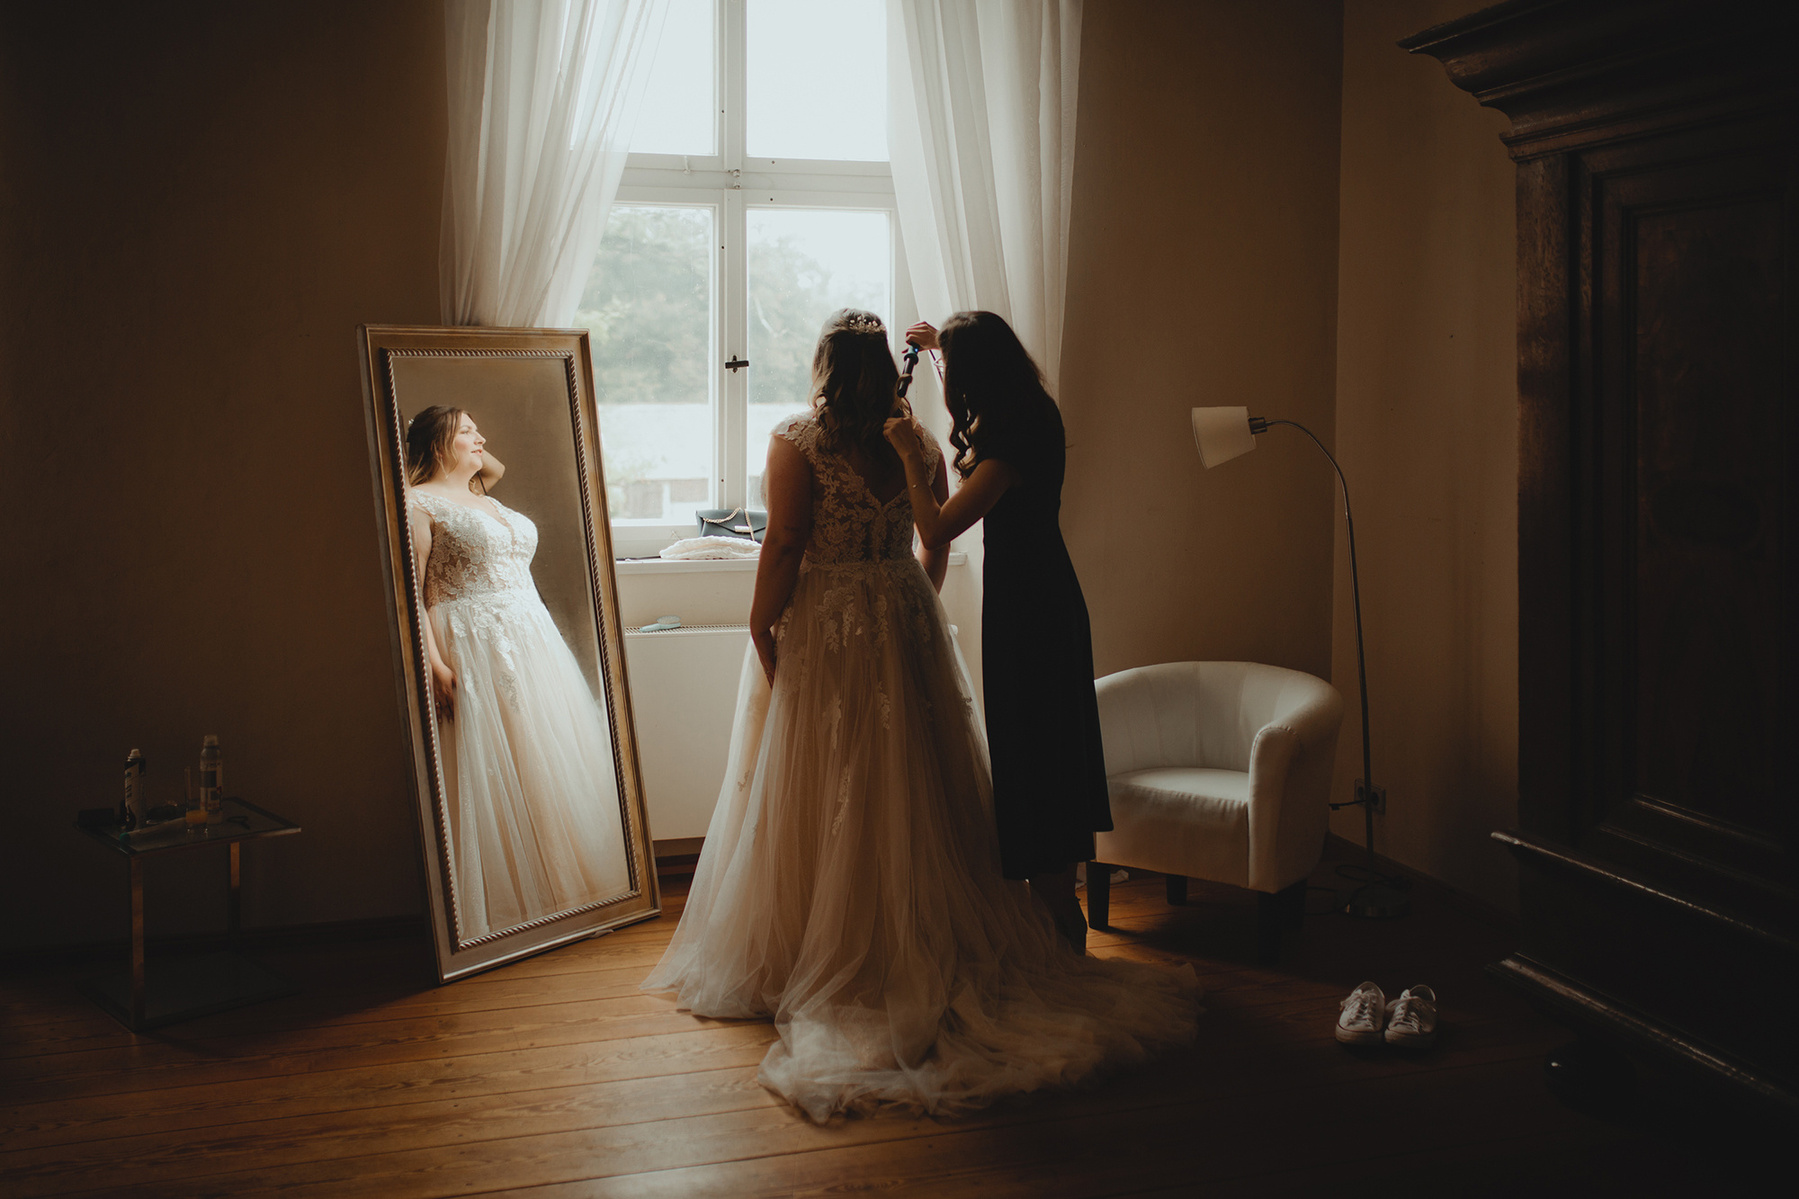 Hochzeitsfotos beim Getting Ready der Braut sind eine besondere Erinnerung